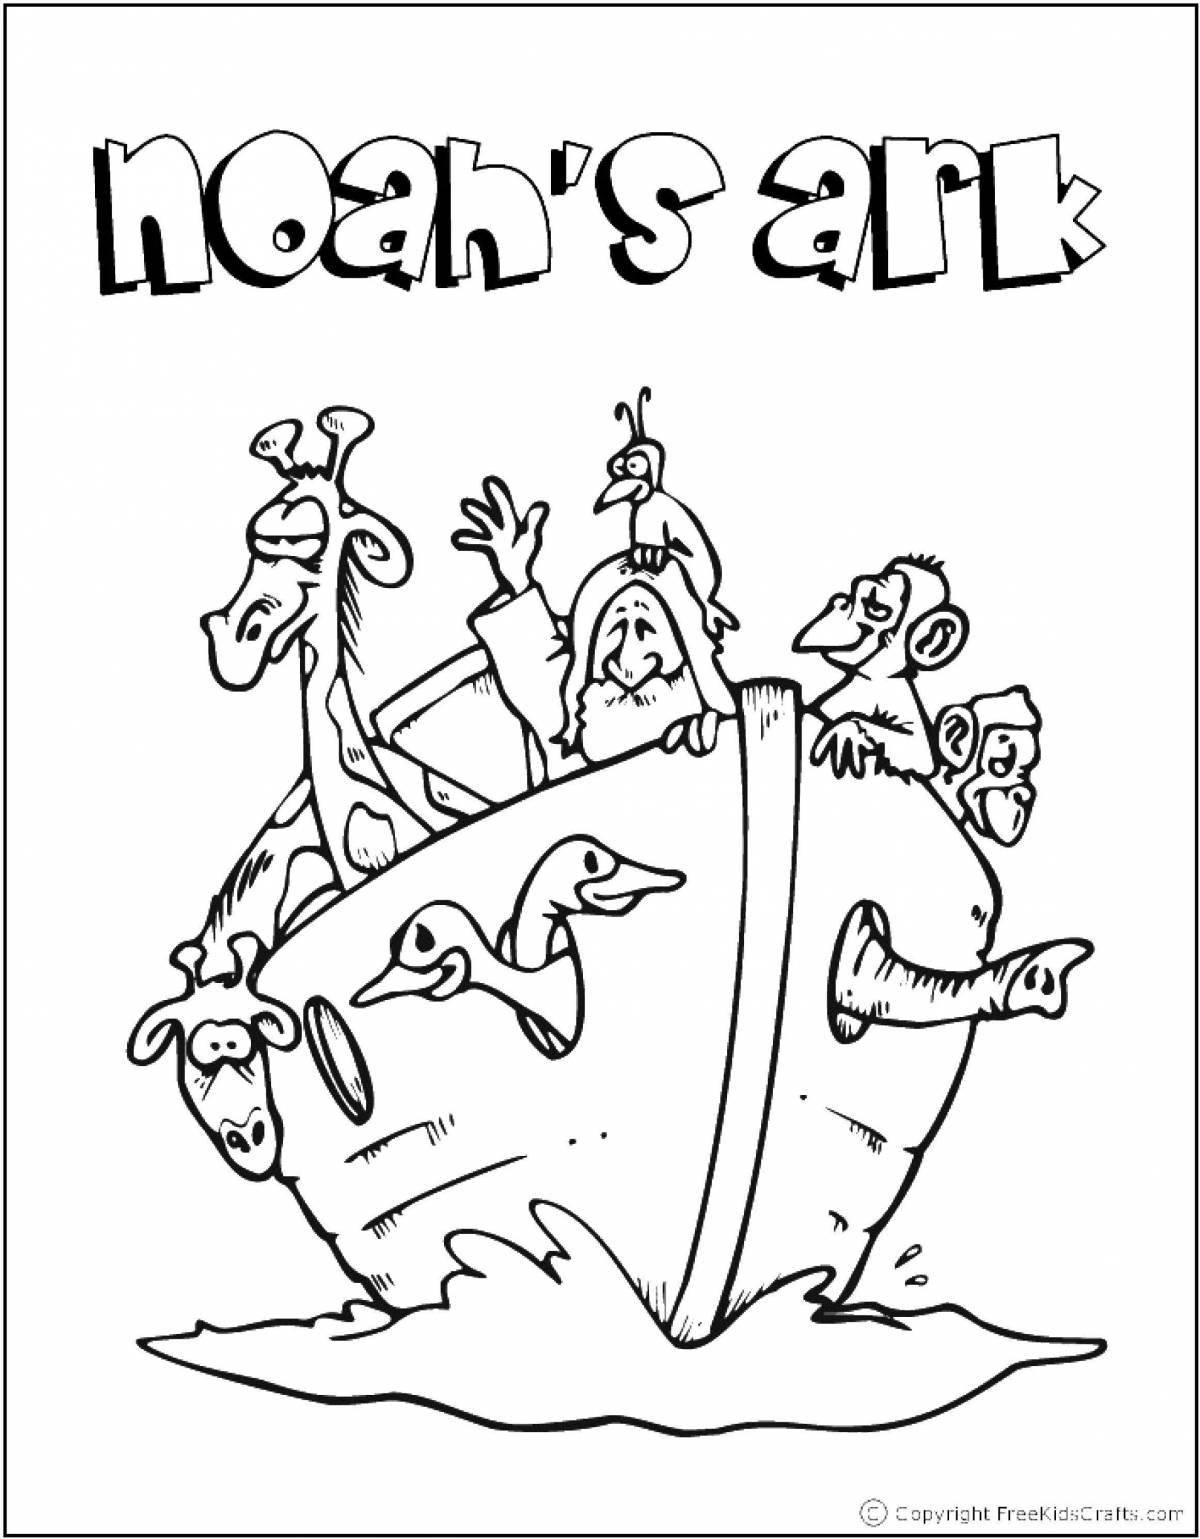 Fun coloring book Noah's Ark for kids